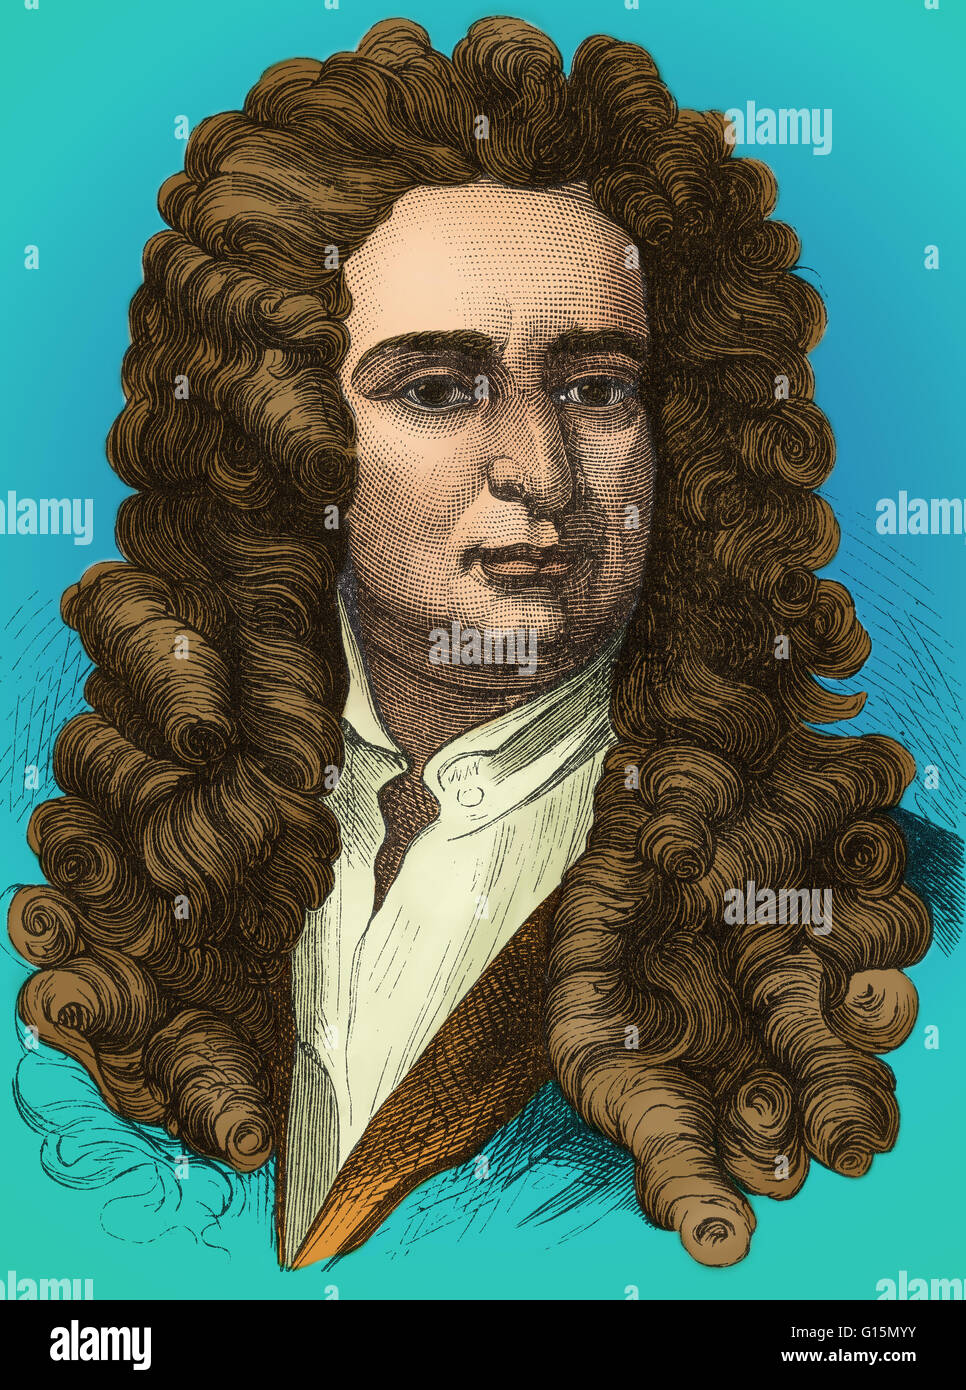 Isaac Newton (25 dicembre 1642 - 20 Marzo 1727) era un fisico inglese, matematico, astronomo, filosofo naturale, alchimista e teologo. La sua monografia Philosophae Naturalis Principia Mathematica, pubblicato nel 1687, getta le basi per m Foto Stock